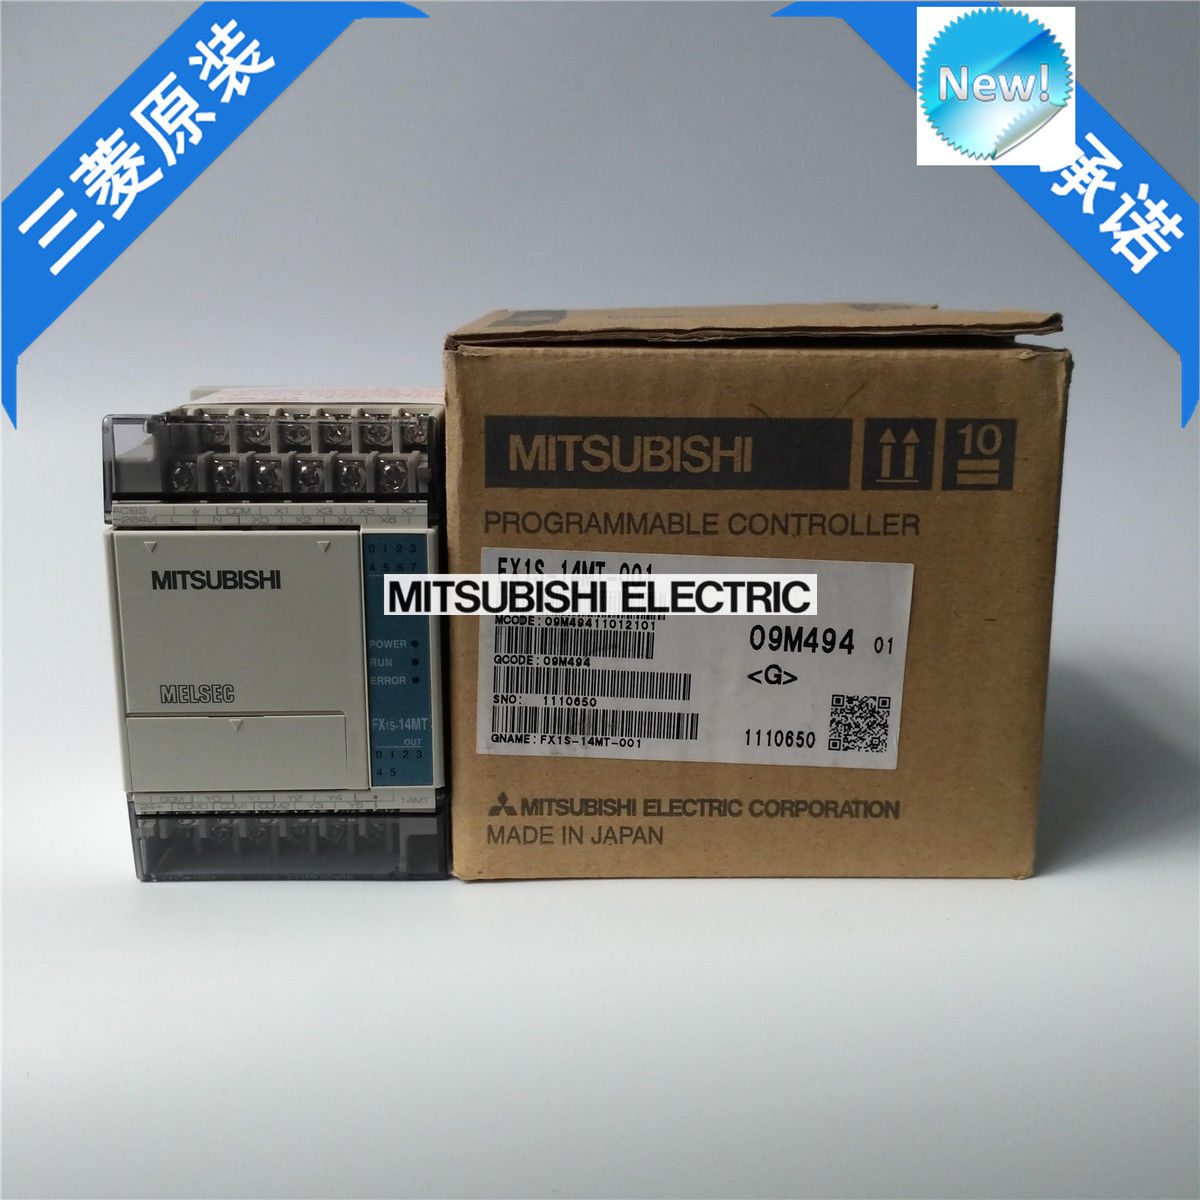 Brand New Mitsubishi PLC FX1S-14MT-001 In Box FX1S14MT001 - zum Schließen ins Bild klicken